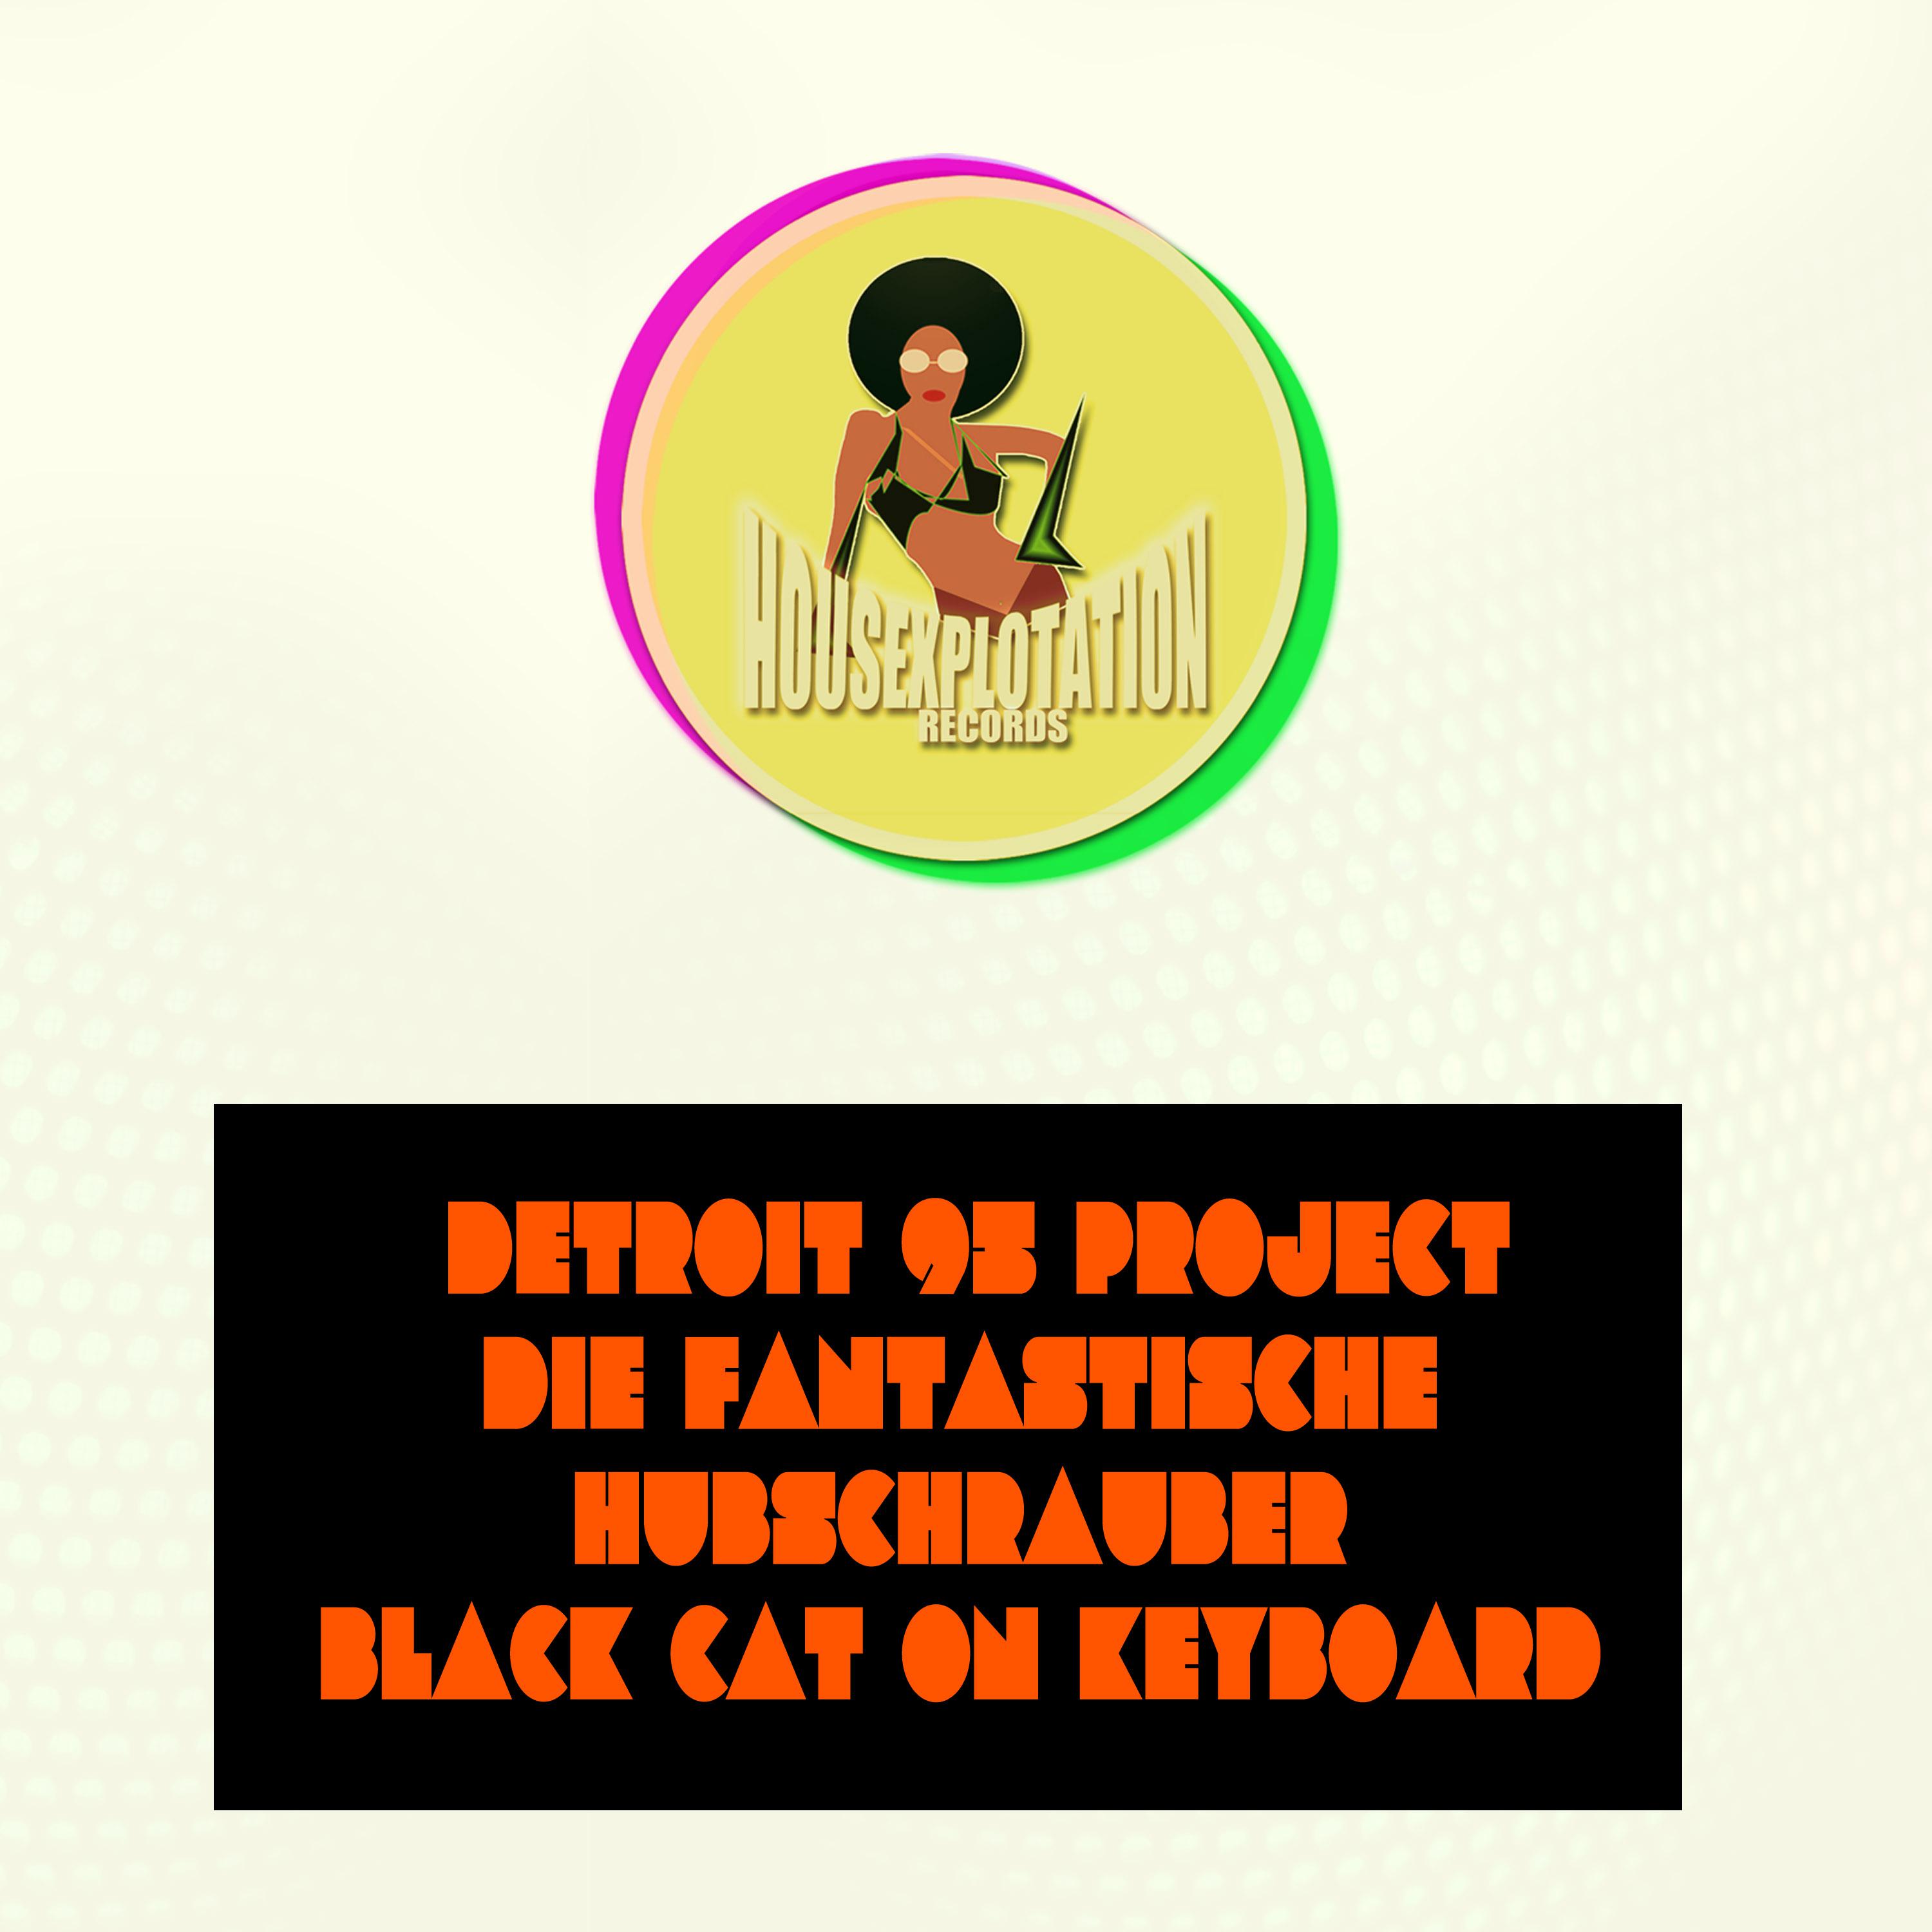 Black Cat on Keyboard